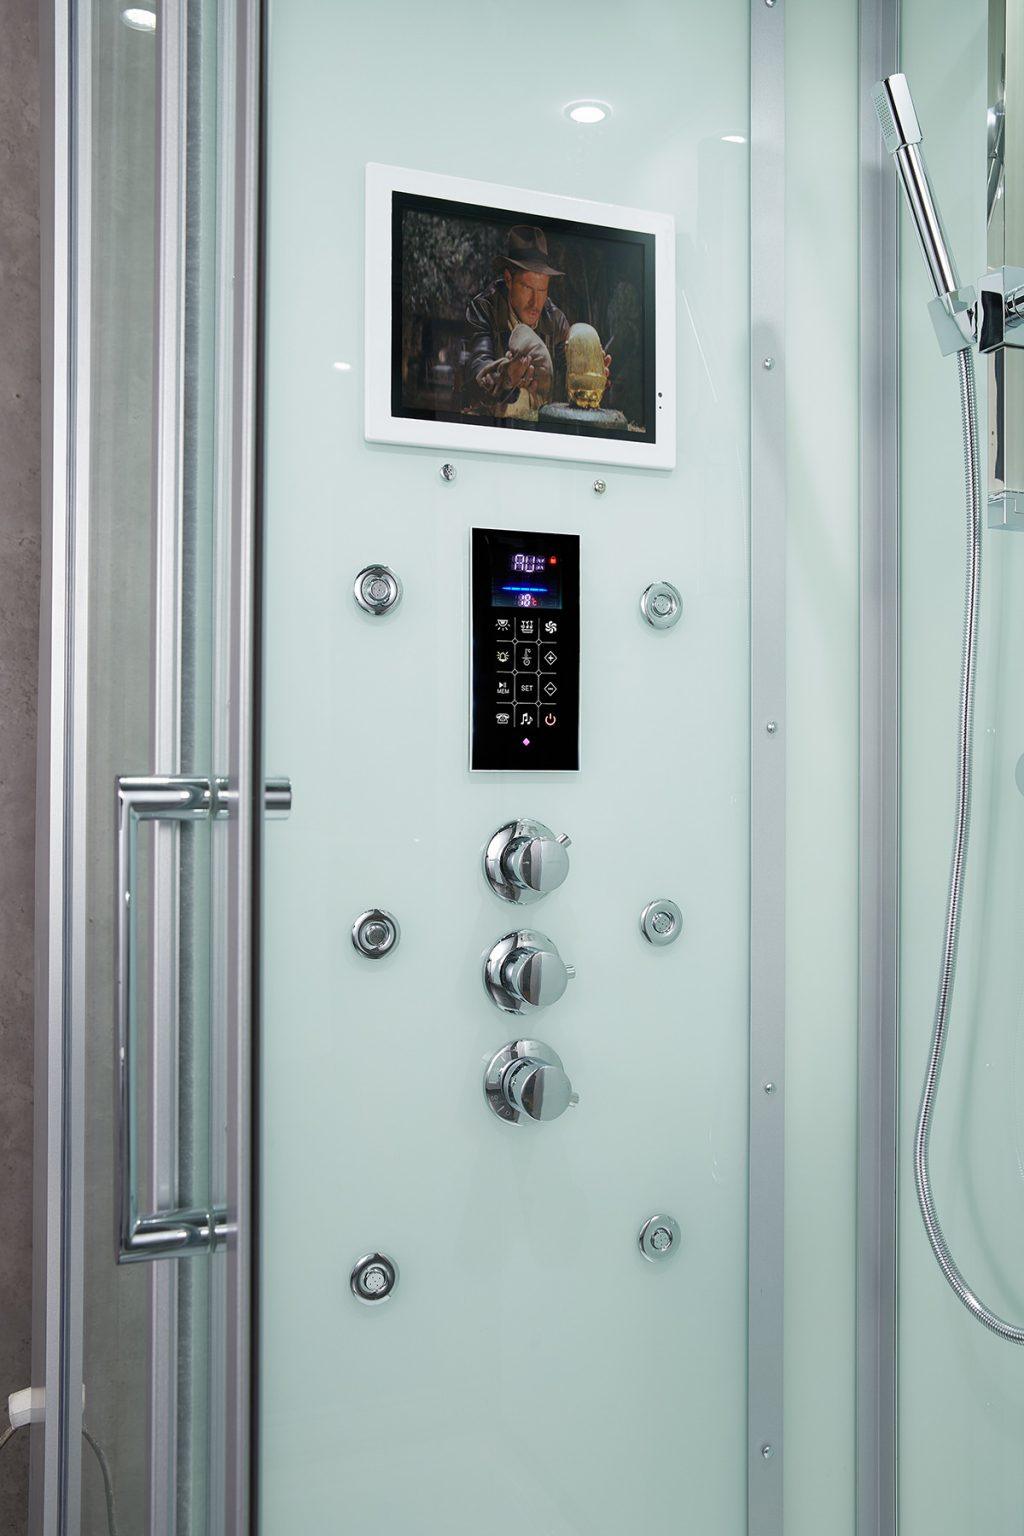 Maya Bath Platinum Lucca Steam Shower - Bathroom Design Center